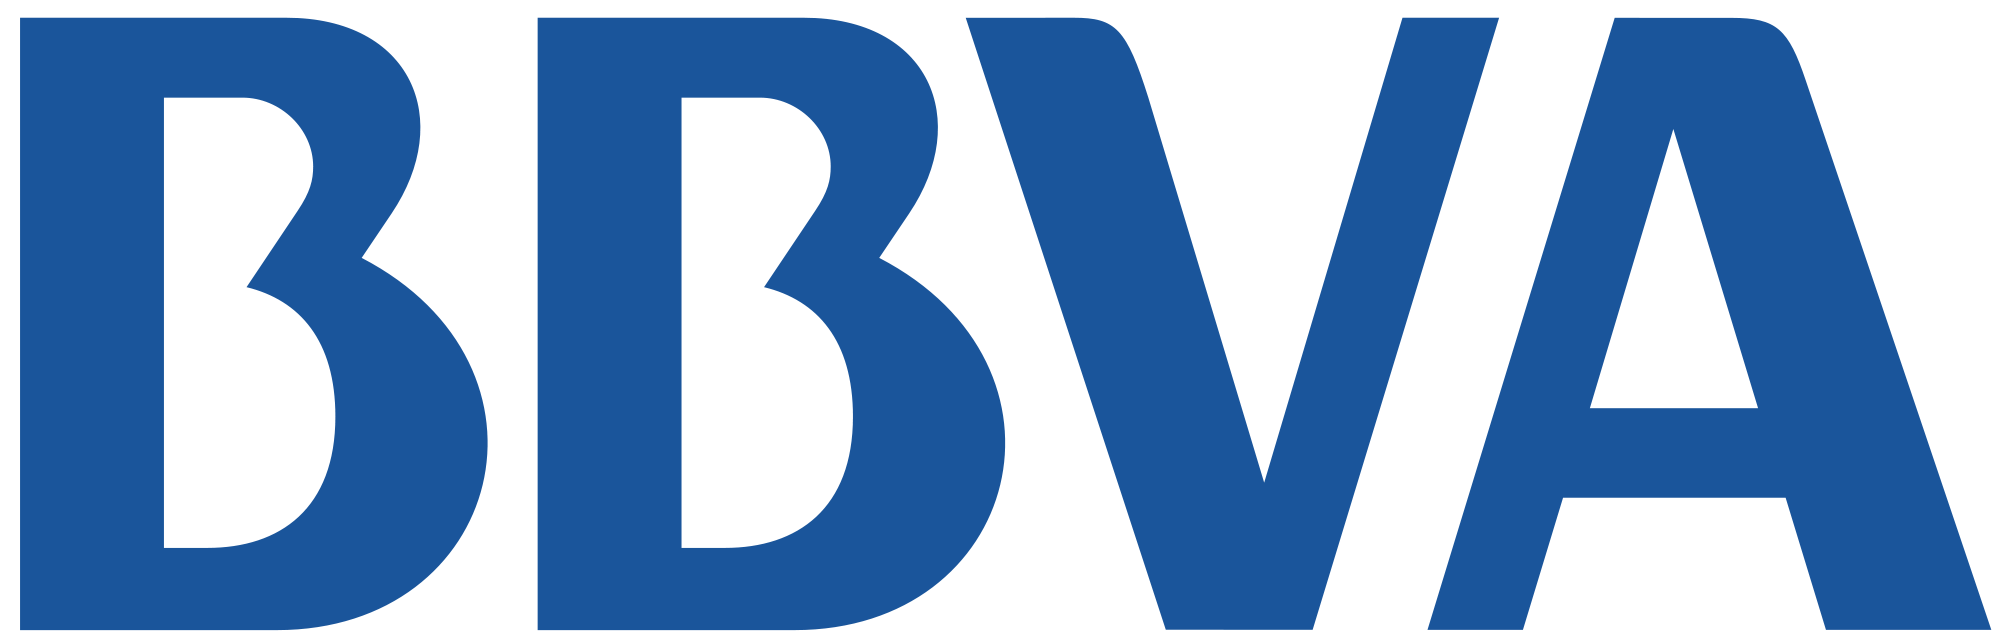 BBVA Compass Logo - BBVA Compass Summer 2017 Internship - APPS DUE 2/13! | harbert ...